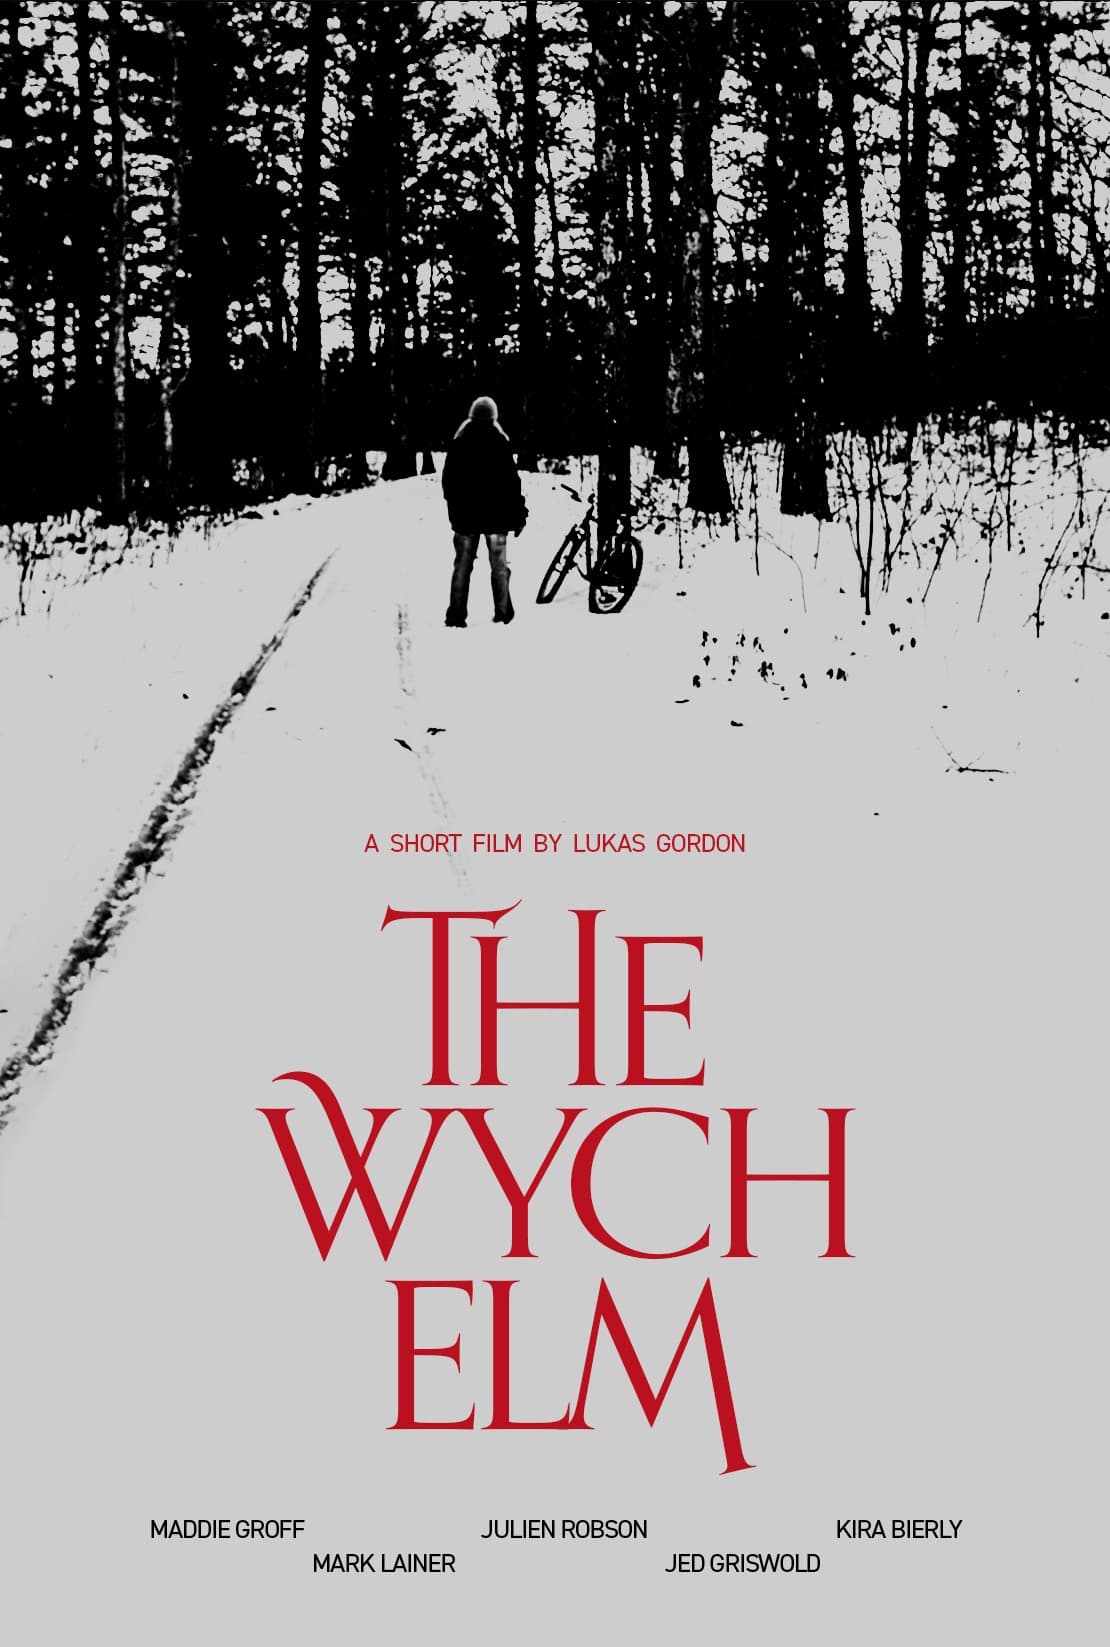 The Wych Elm